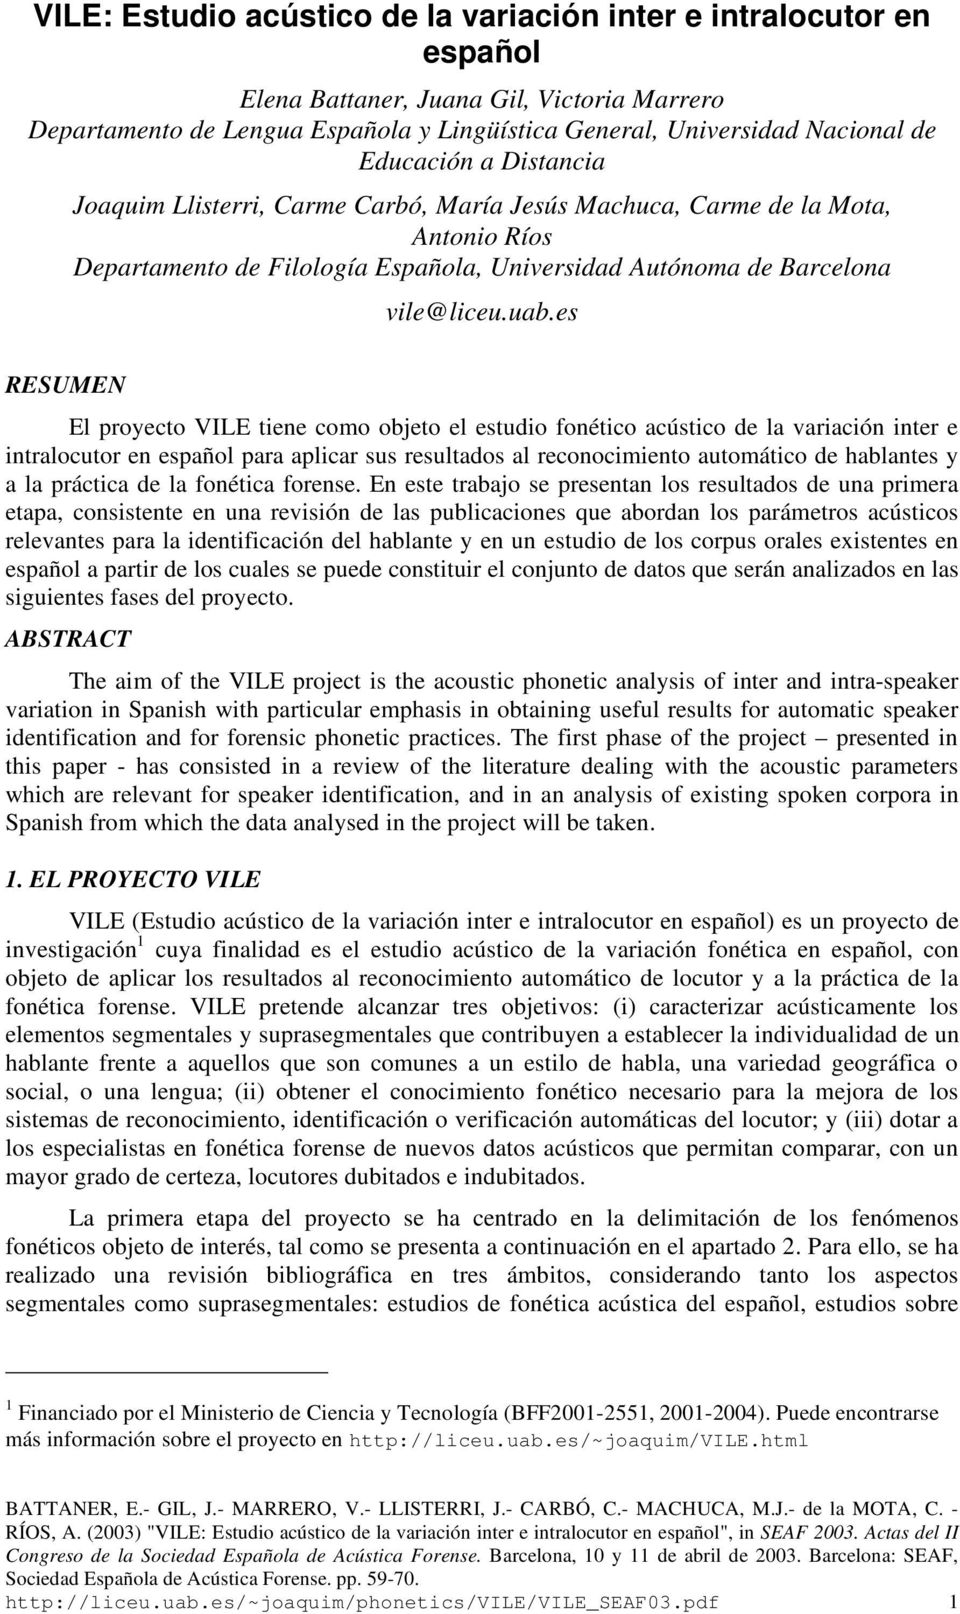 es RESUMEN El proyecto VILE tiene como objeto el estudio fonético acústico de la variación inter e intralocutor en español para aplicar sus resultados al reconocimiento automático de hablantes y a la